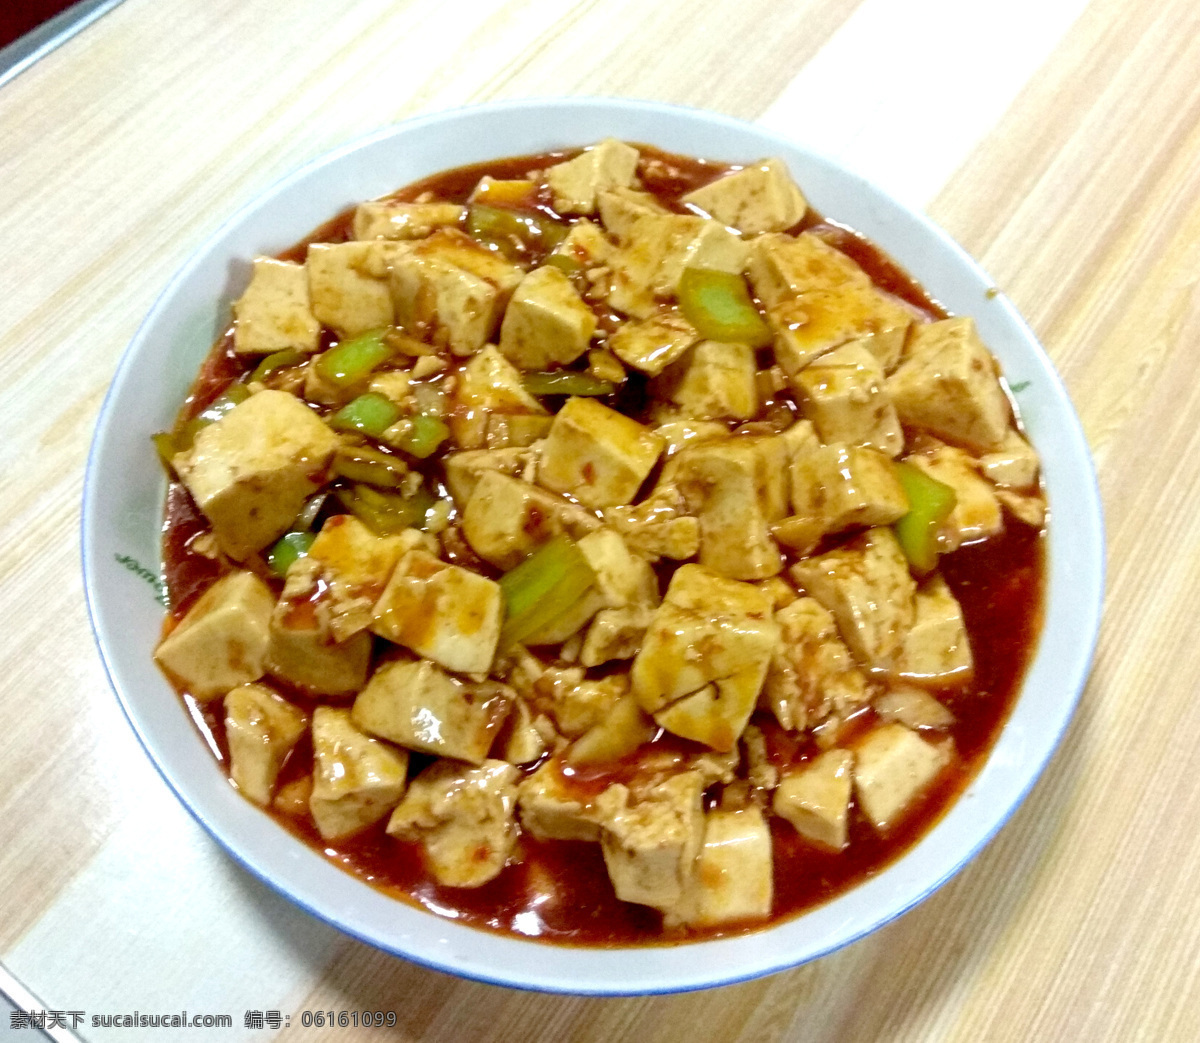 麻婆豆腐 豆腐 麻辣豆腐 溜豆腐 炒菜 餐饮美食 传统美食